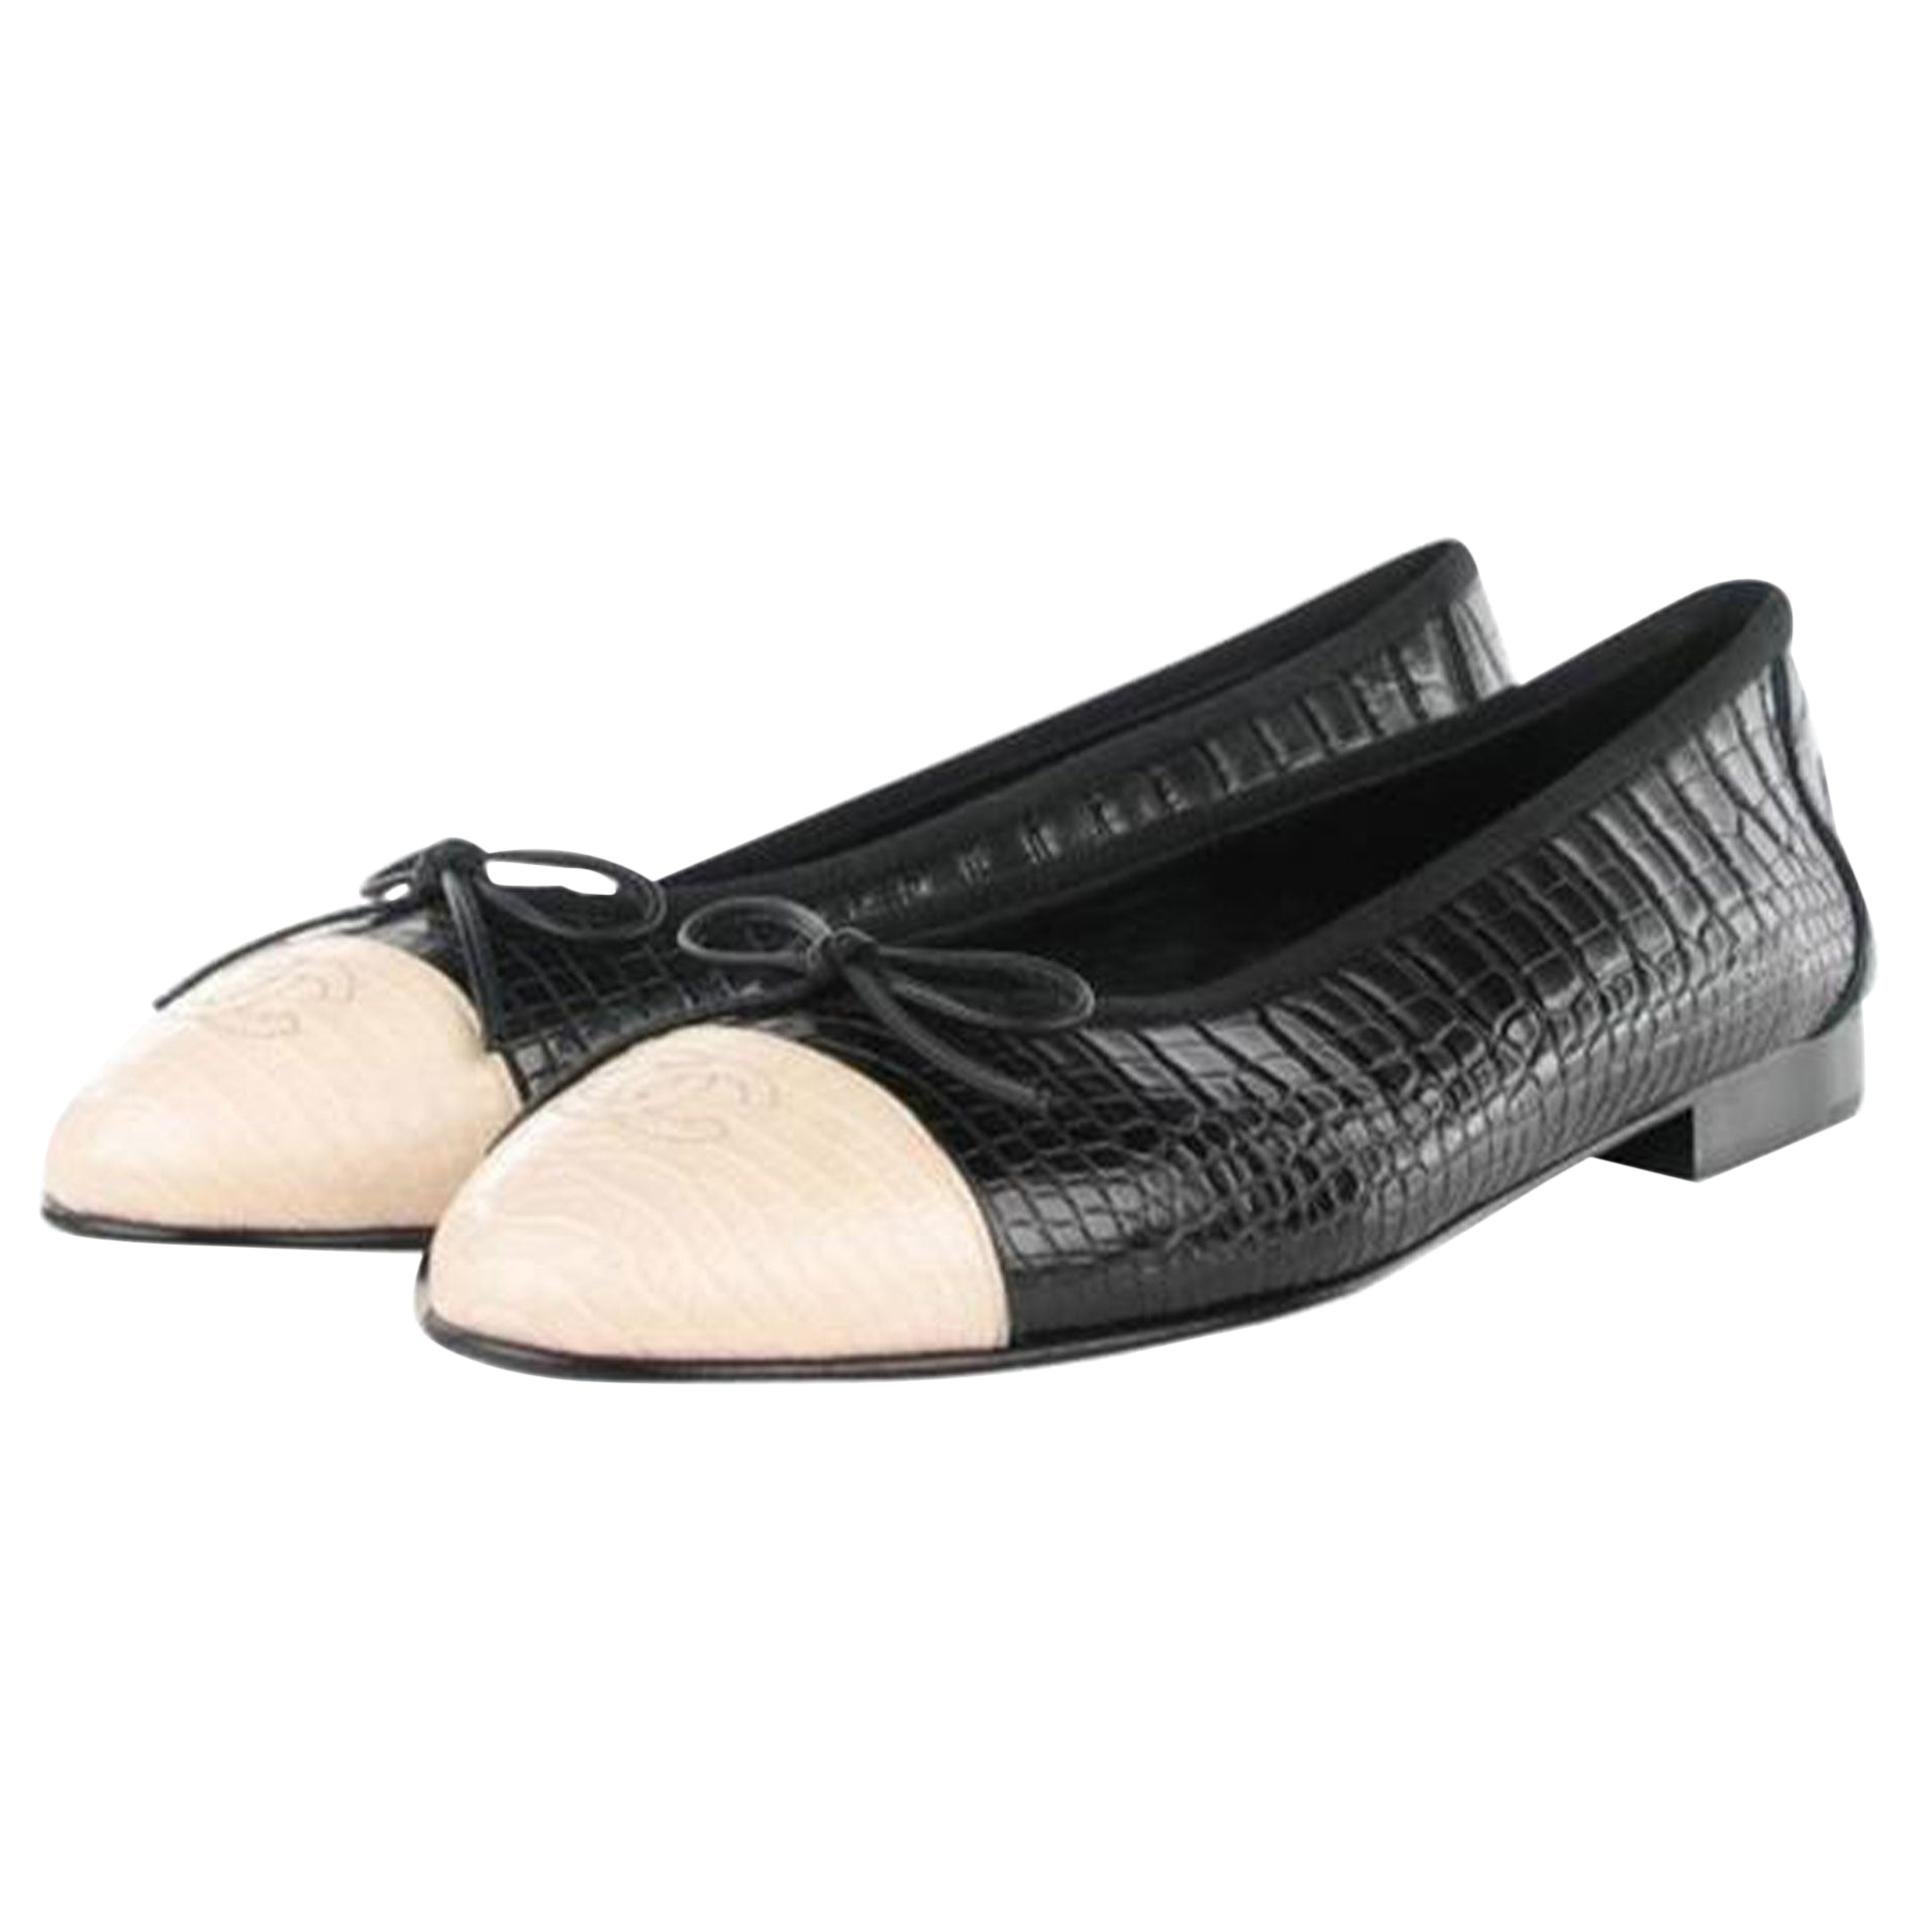 Chaussures à talons compensés en crocodile et alligator, édition limitée noire et blanche, Chanel 39,5